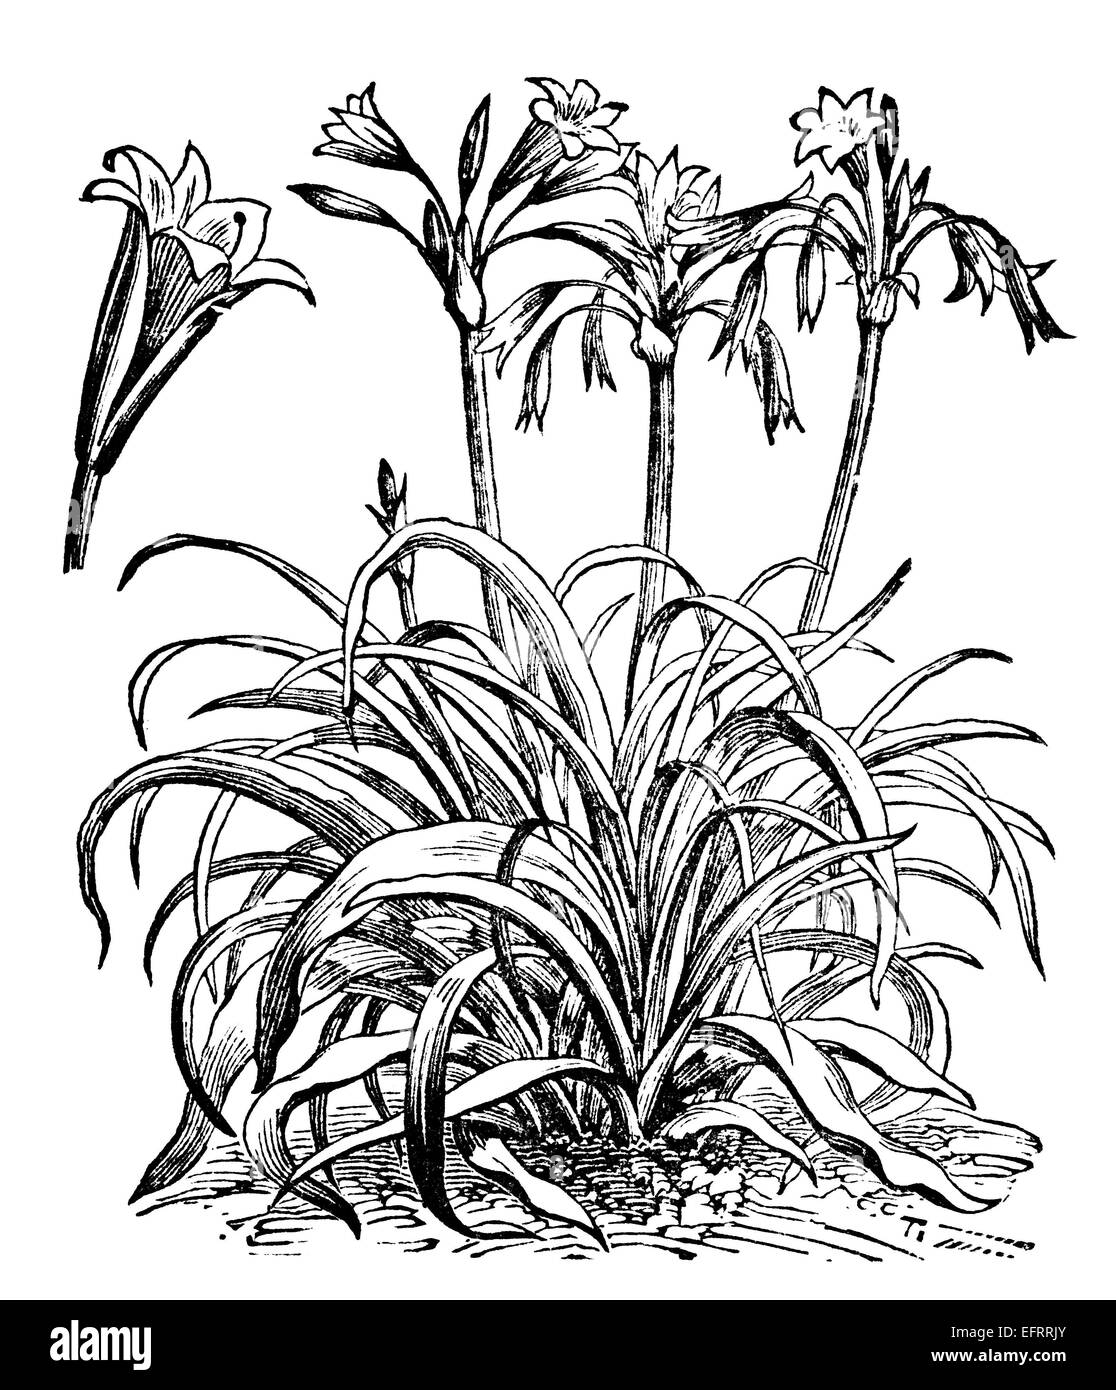 Gravure d'une victorienne crinum plante. Image restaurée numériquement à partir d'un milieu du xixe siècle l'encyclopédie. Banque D'Images